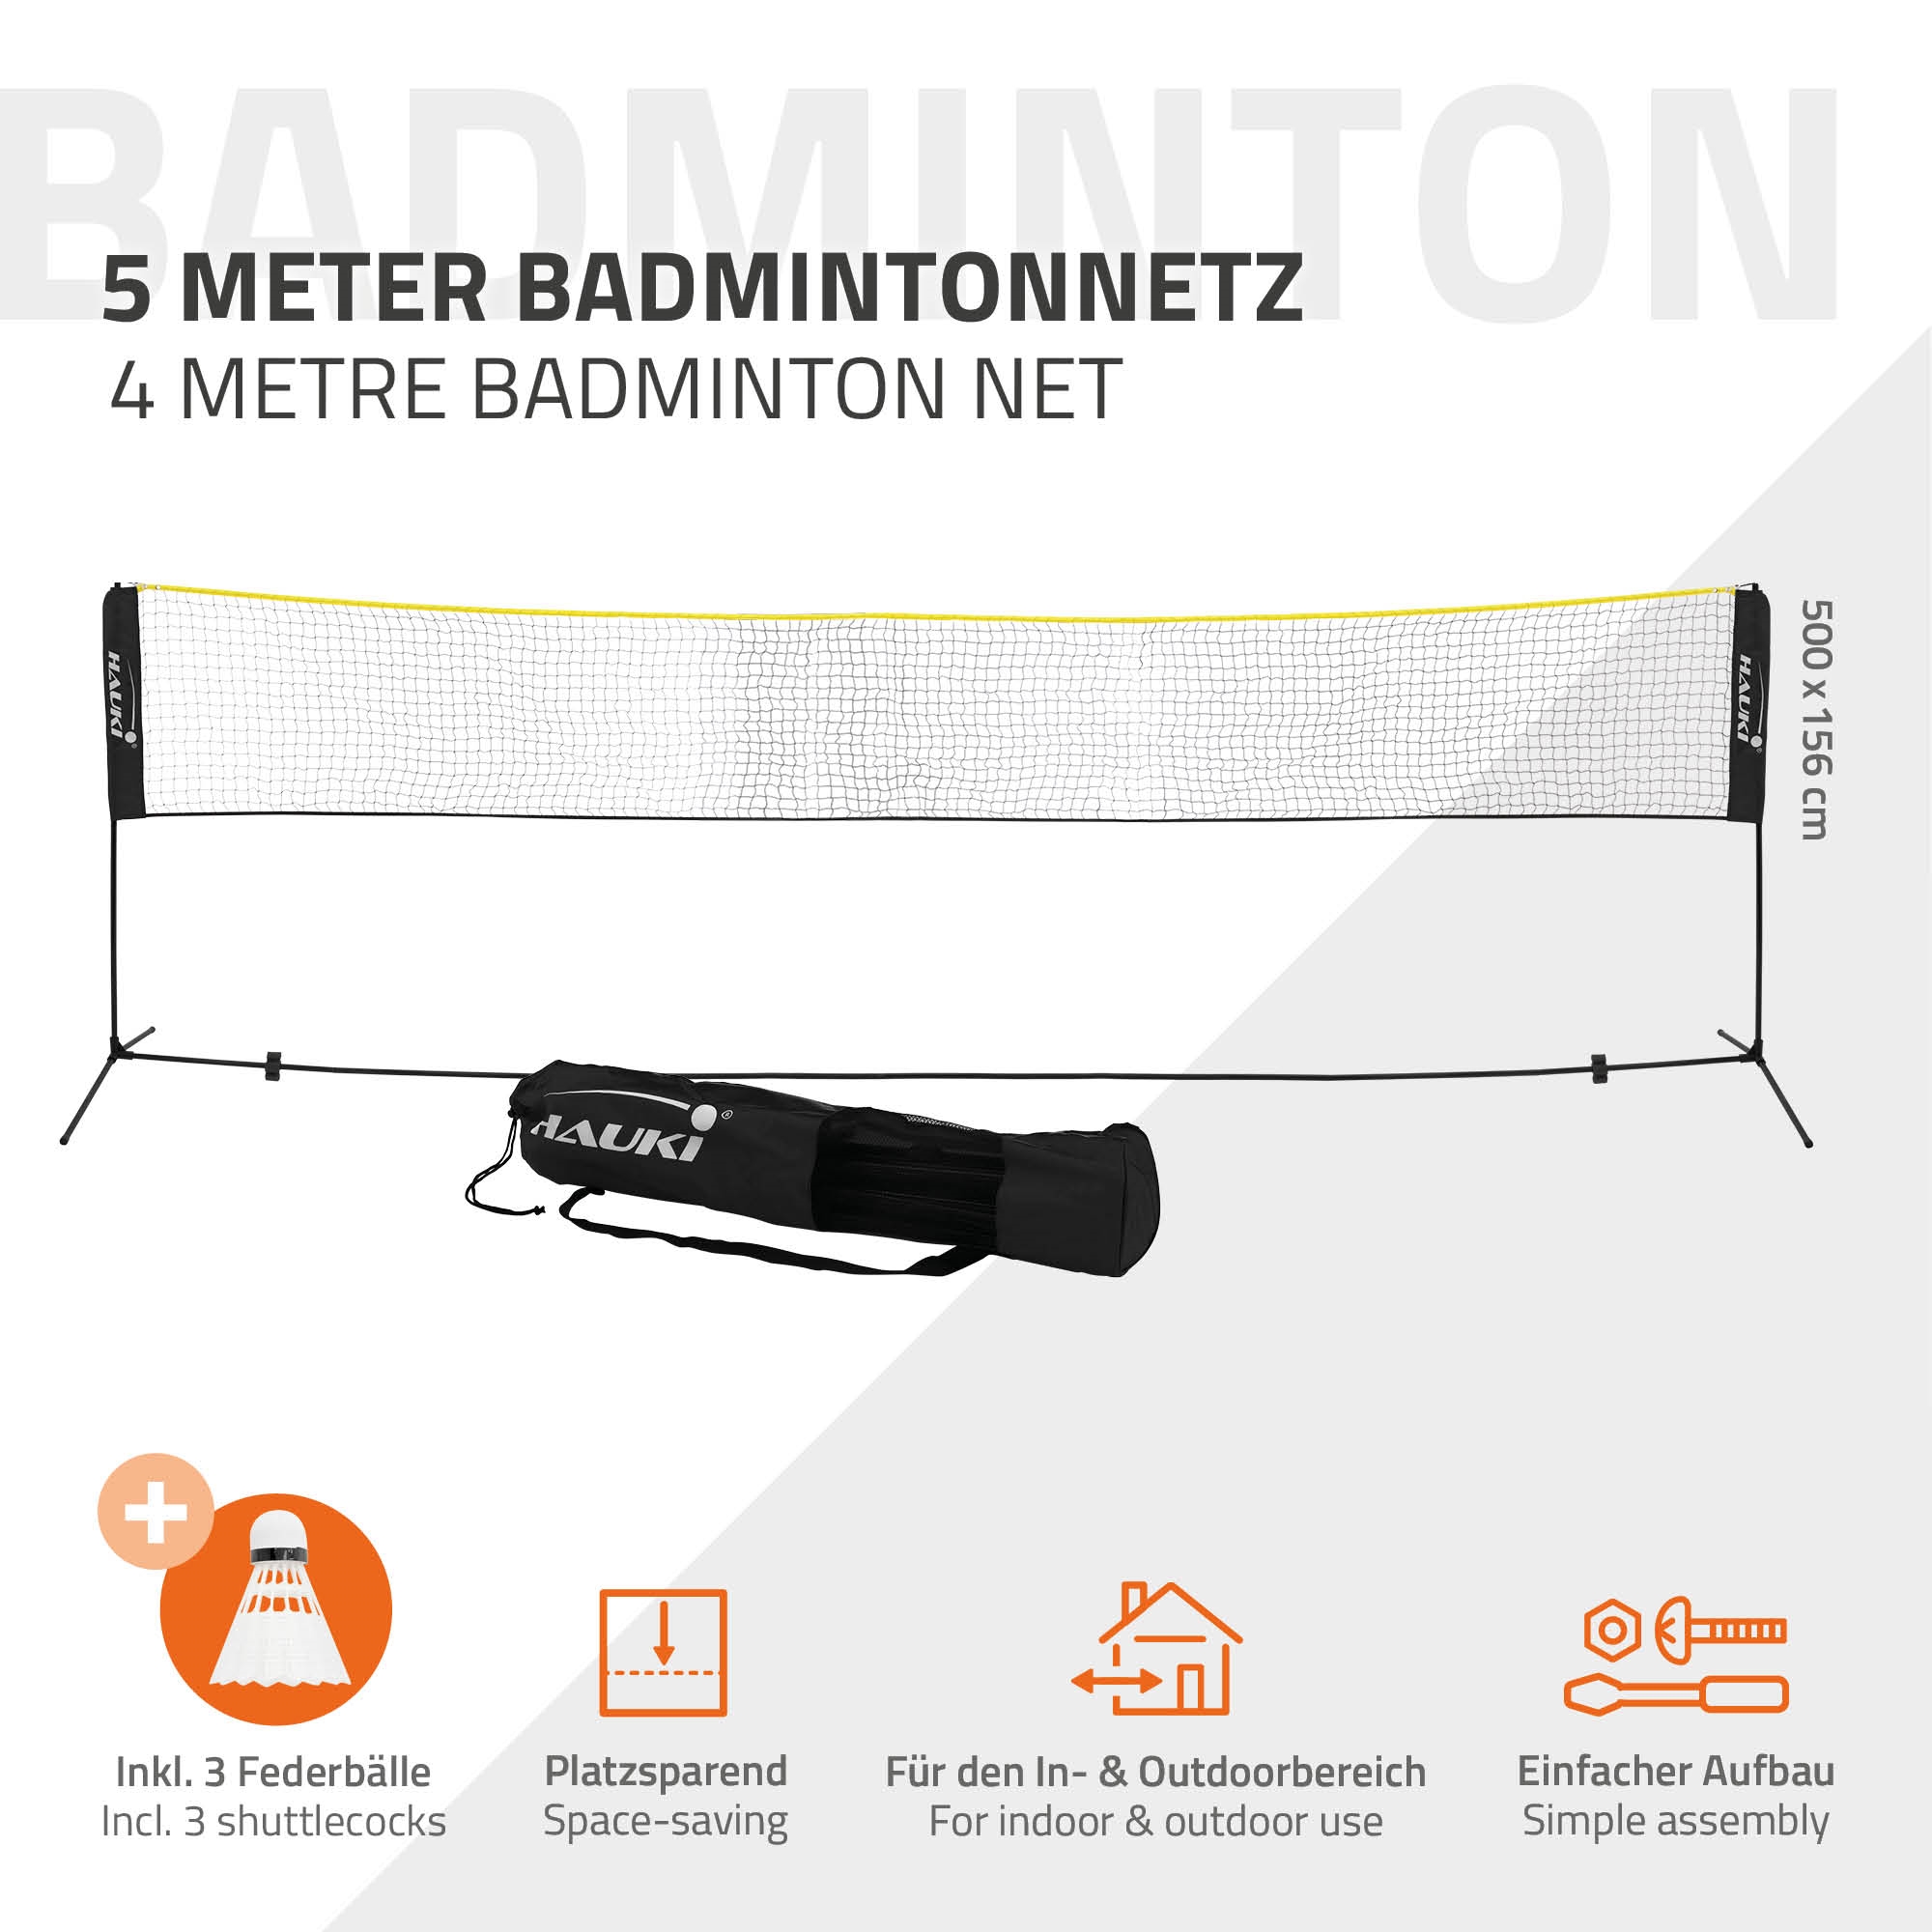 filet de badminton portable avec sac de transport, filet de volley-ball  pour les sports de plage en intérieur à l'extérieur - peut être installé en  quelques secondes sur n'importe quelle surface